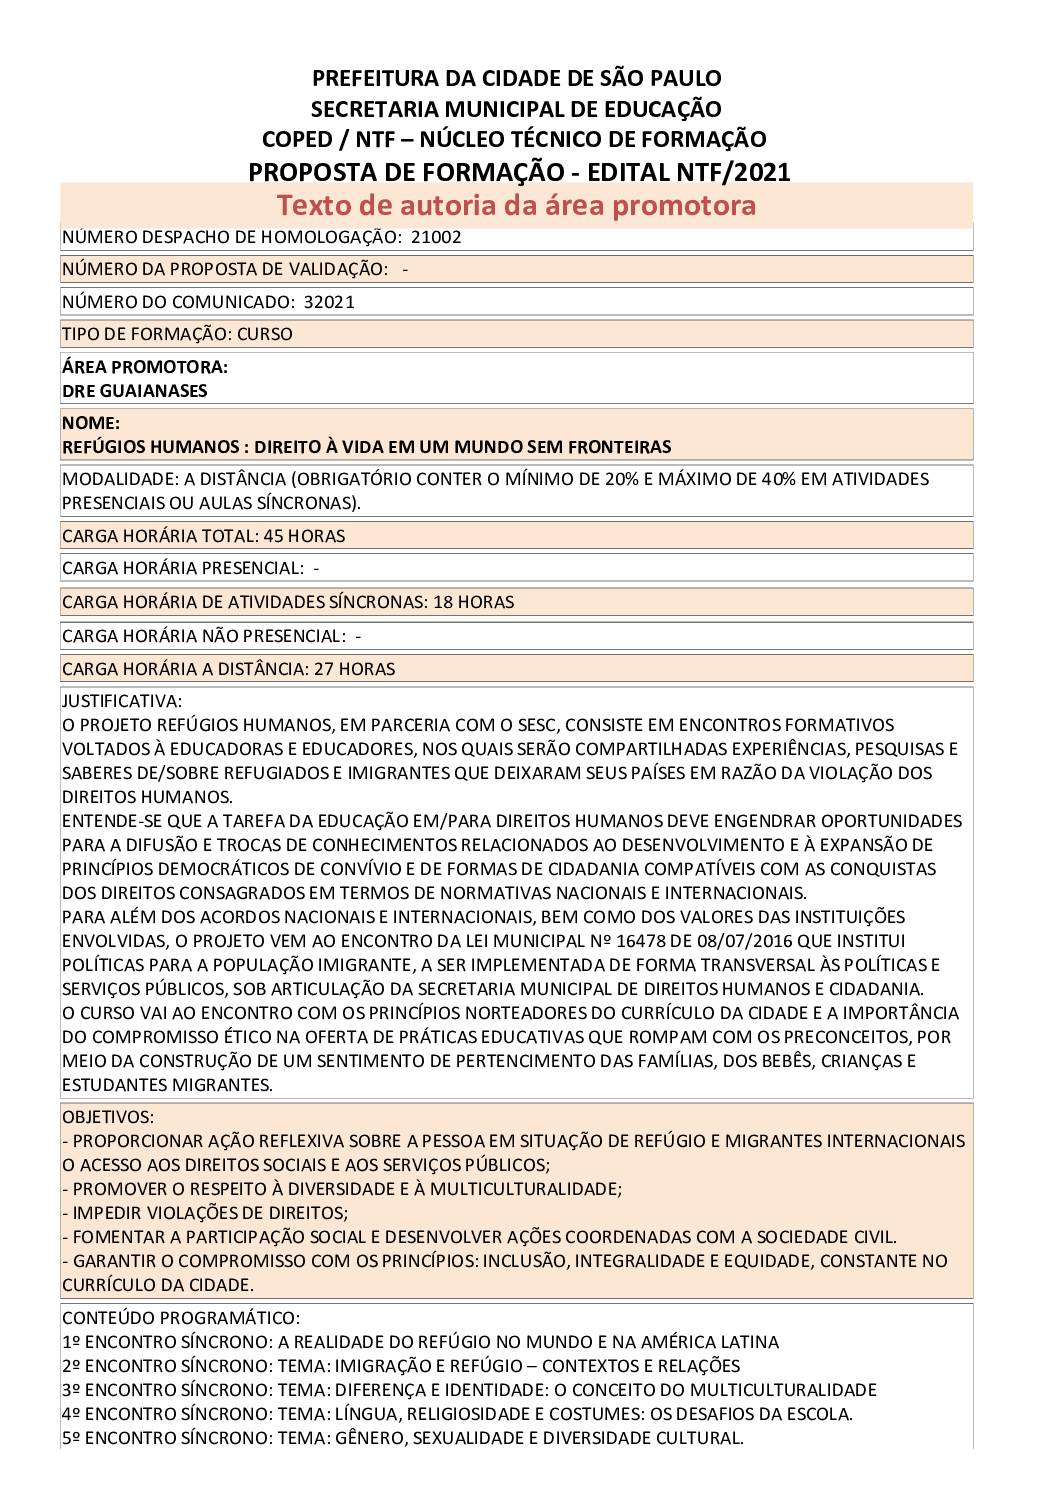 PDF com informações sobre o curso: REFÚGIOS HUMANOS : DIREITO À VIDA EM UM MUNDO SEM FRONTEIRAS